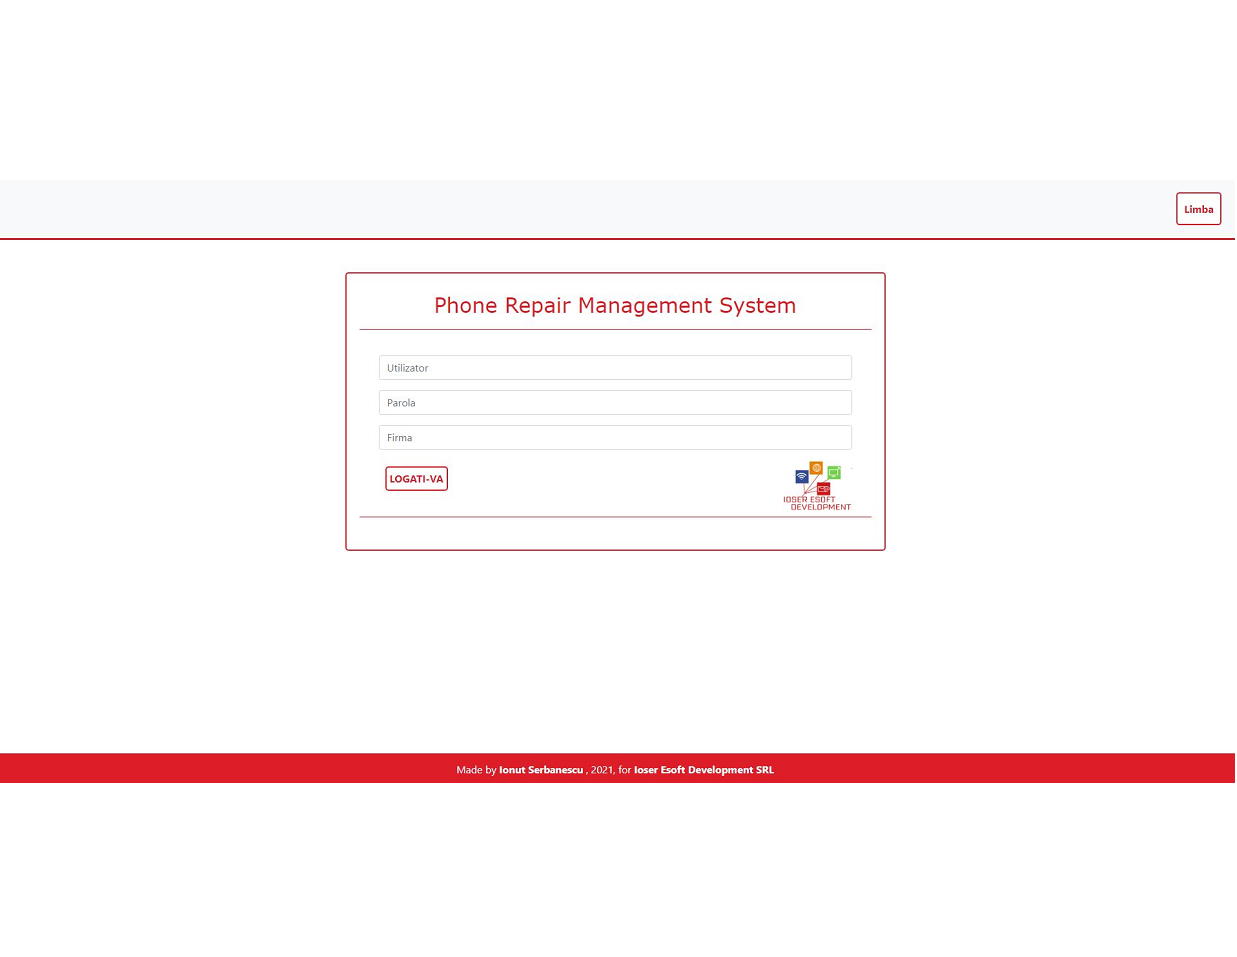 PRMS - Phone Repair Management System